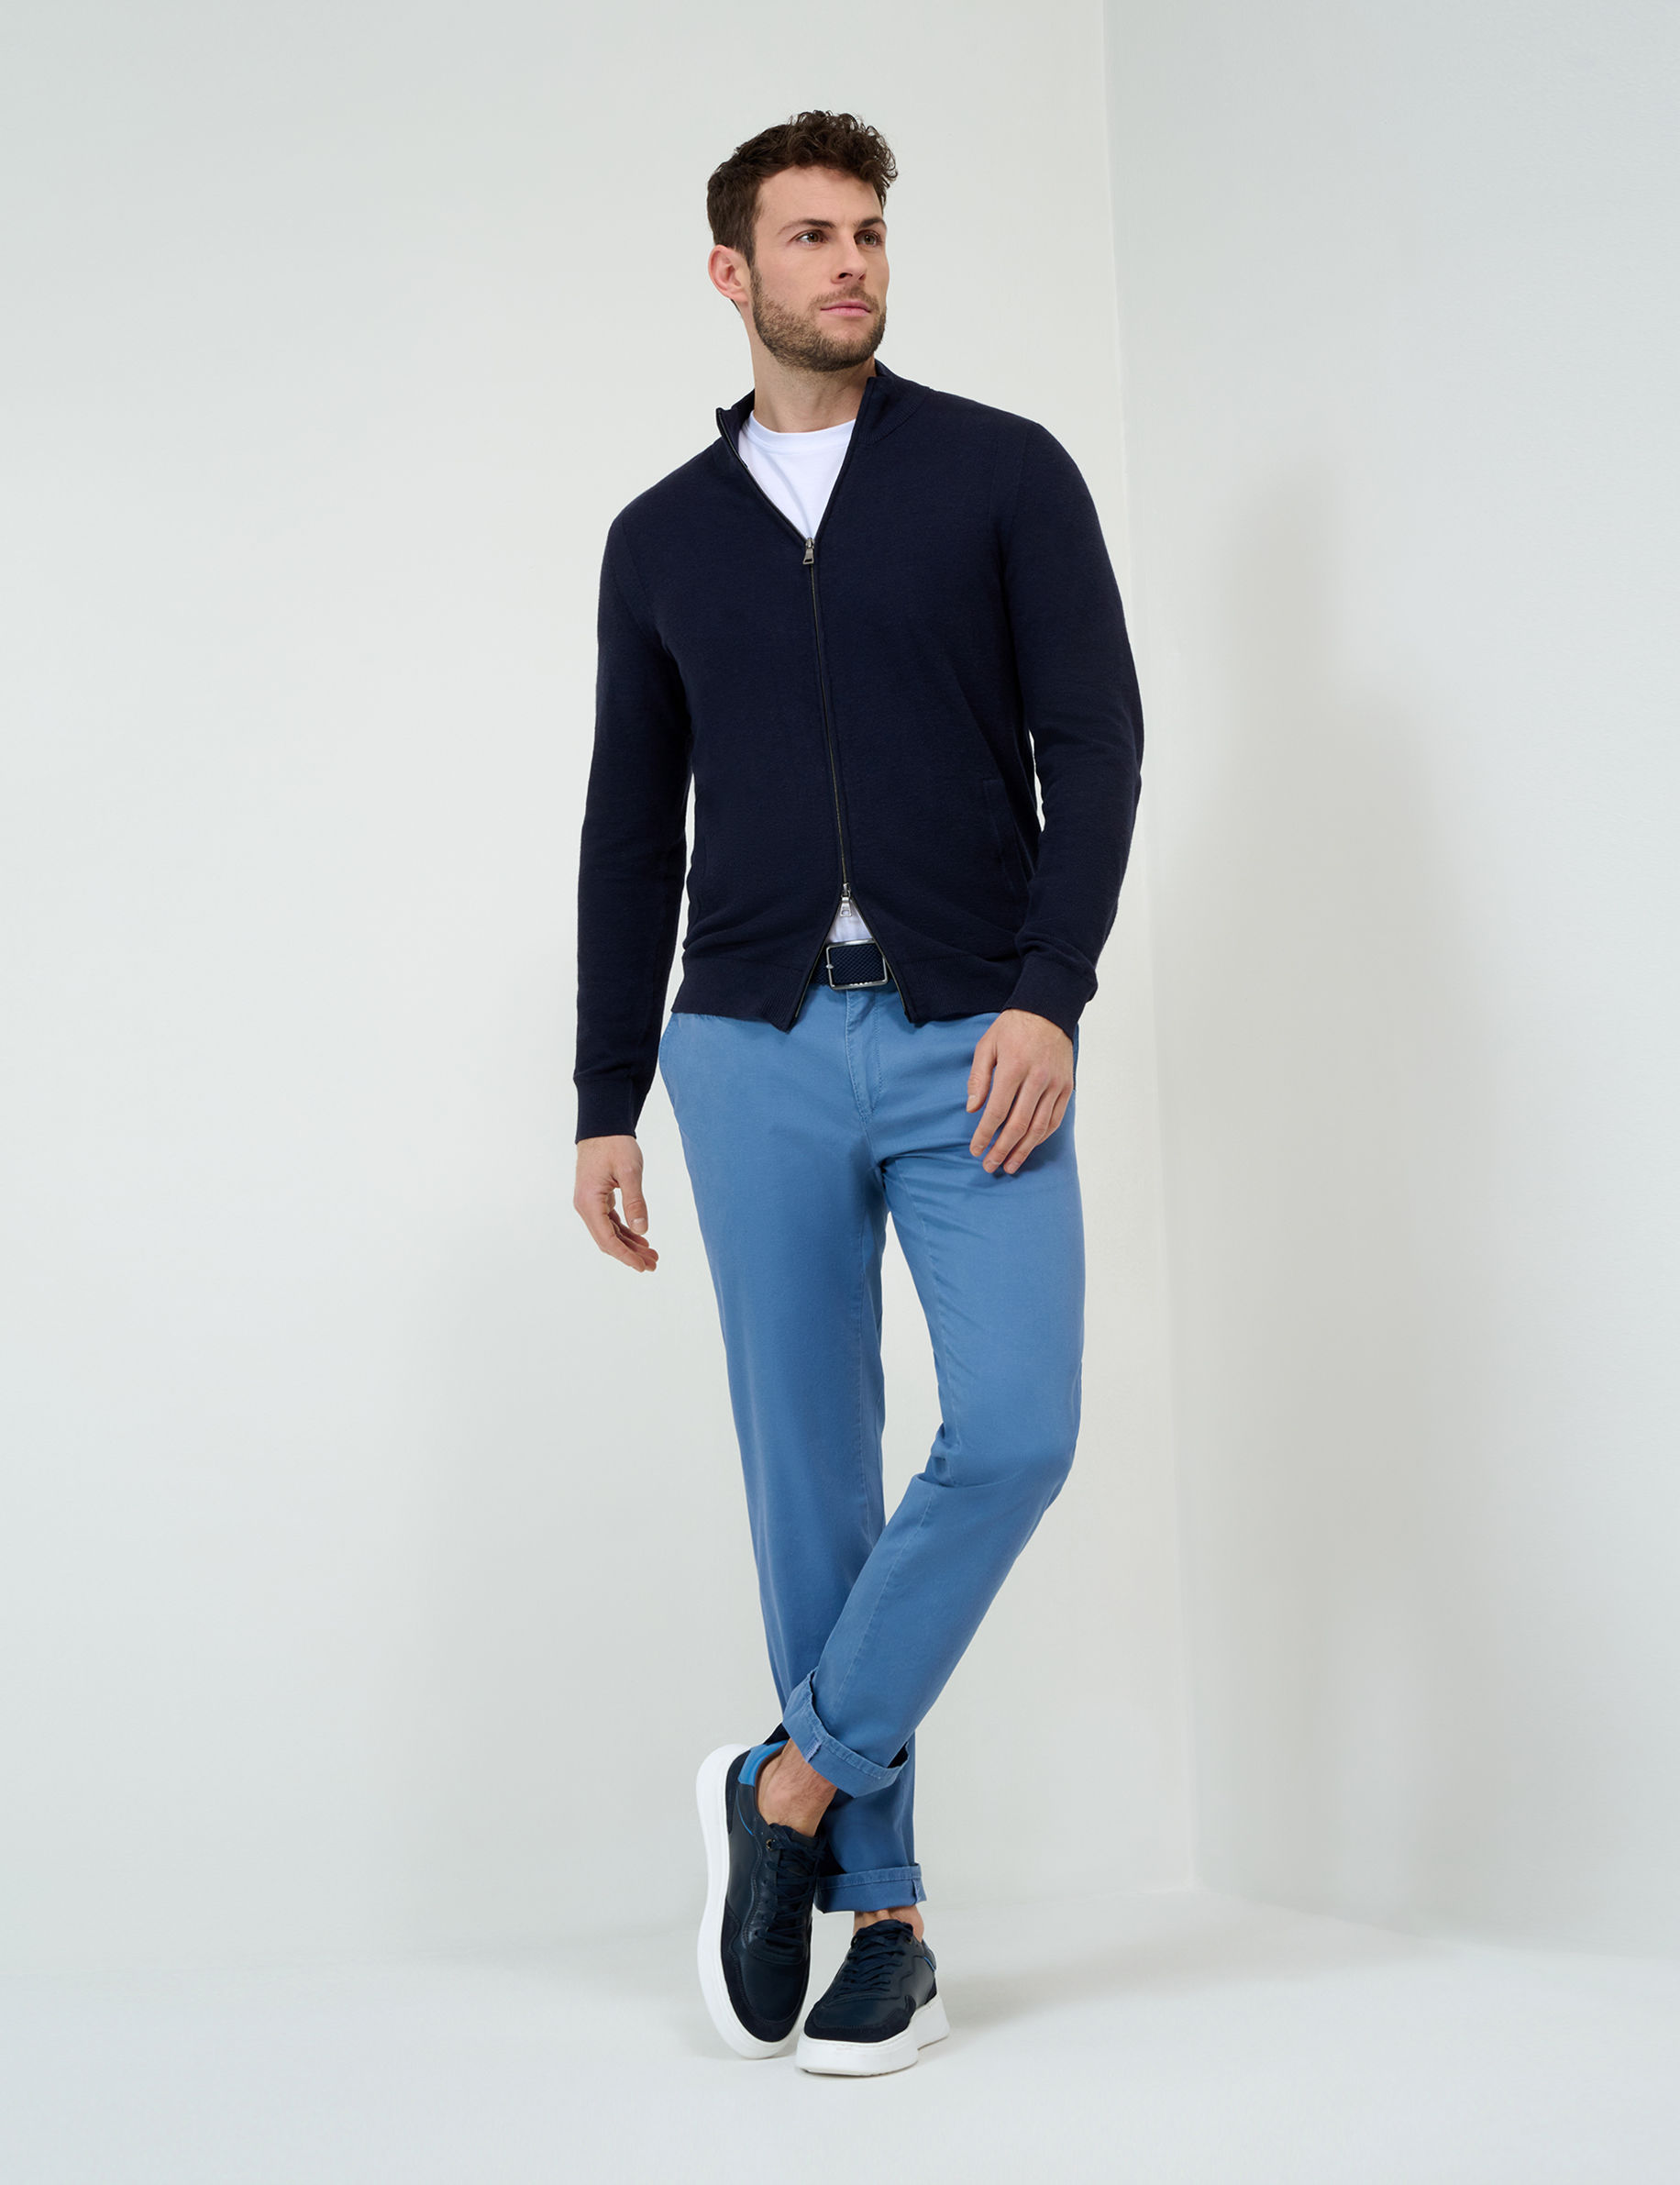 Men Style FABIO IN DUSTY BLUE Modern Fit Stand-alone rear view